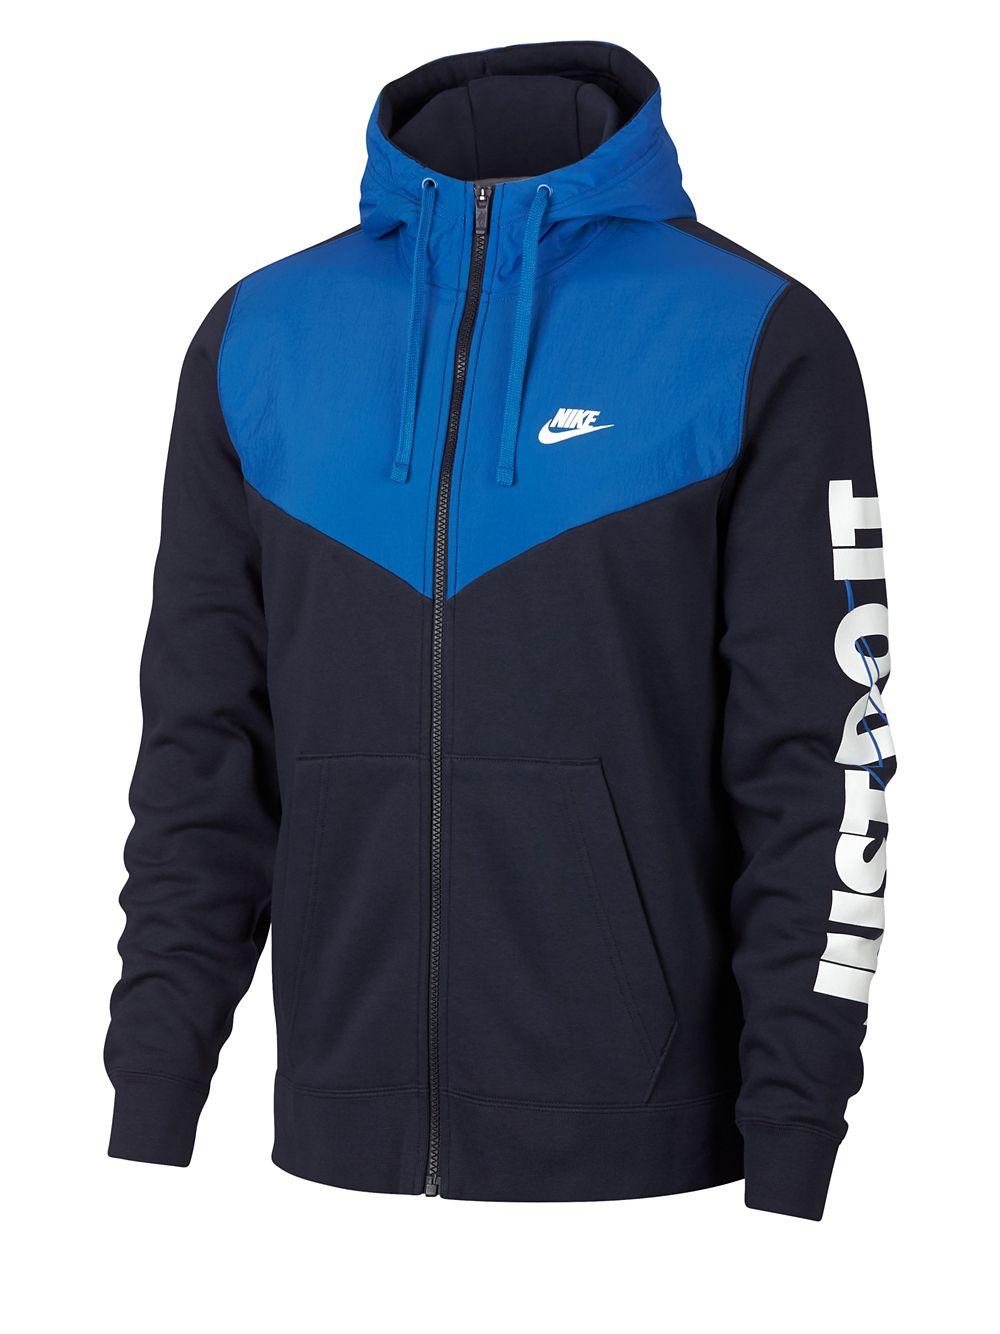 Nike Sportswear Full-zip Fleece Hoodie in Blue for Men - Lyst